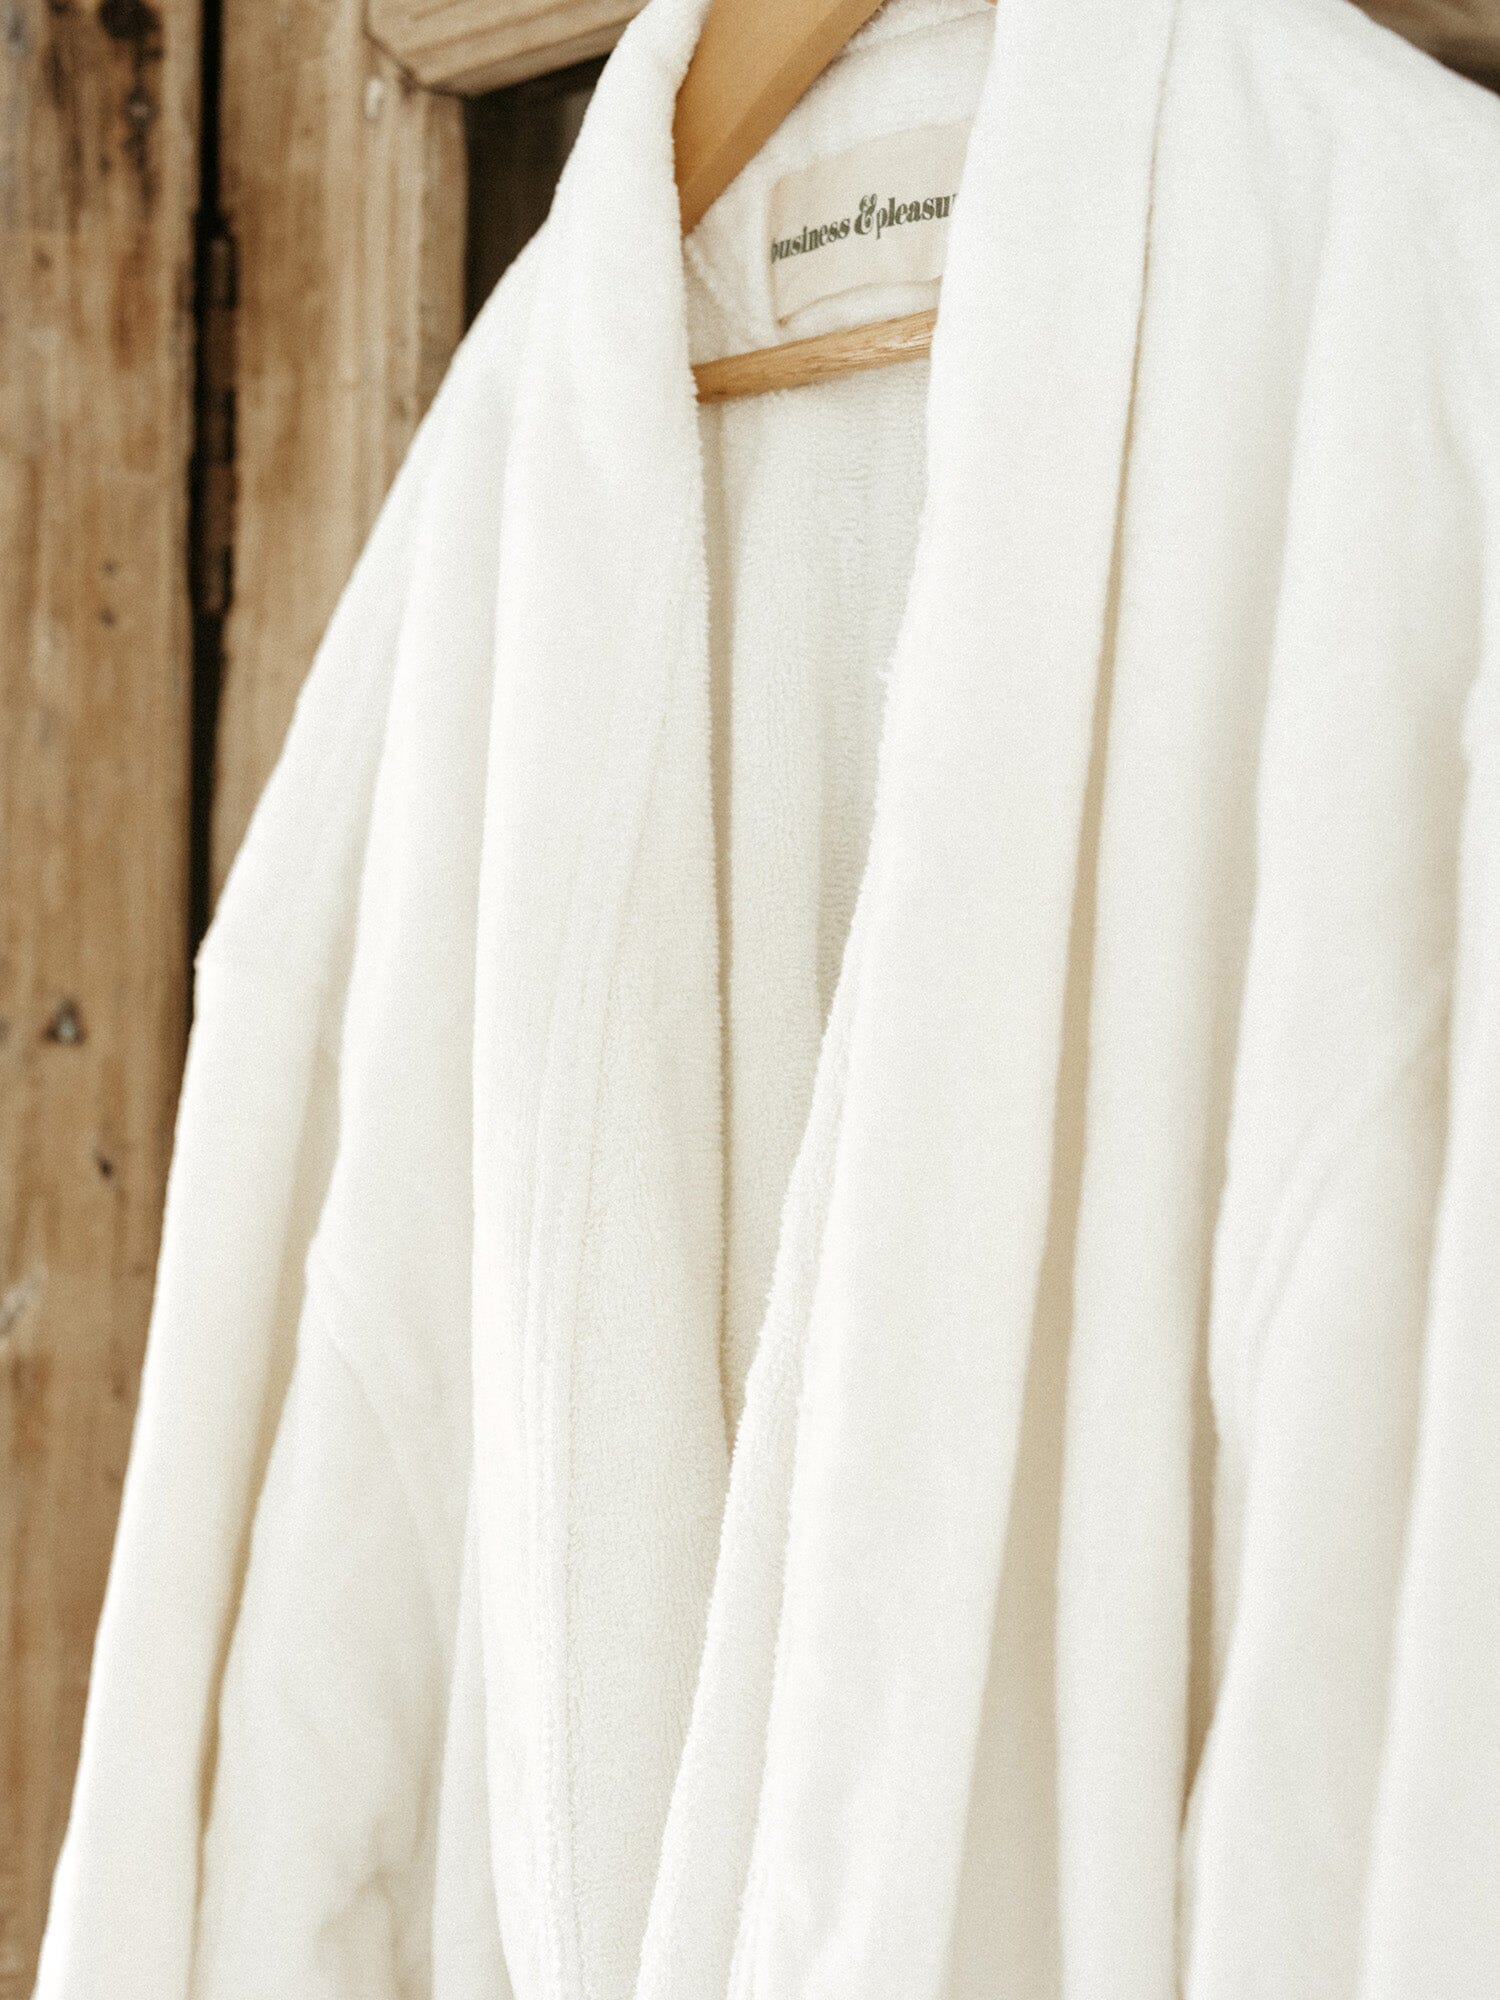 Robe & Slipper Set - Antique White Robe & Slipper Set Business & Pleasure Co 